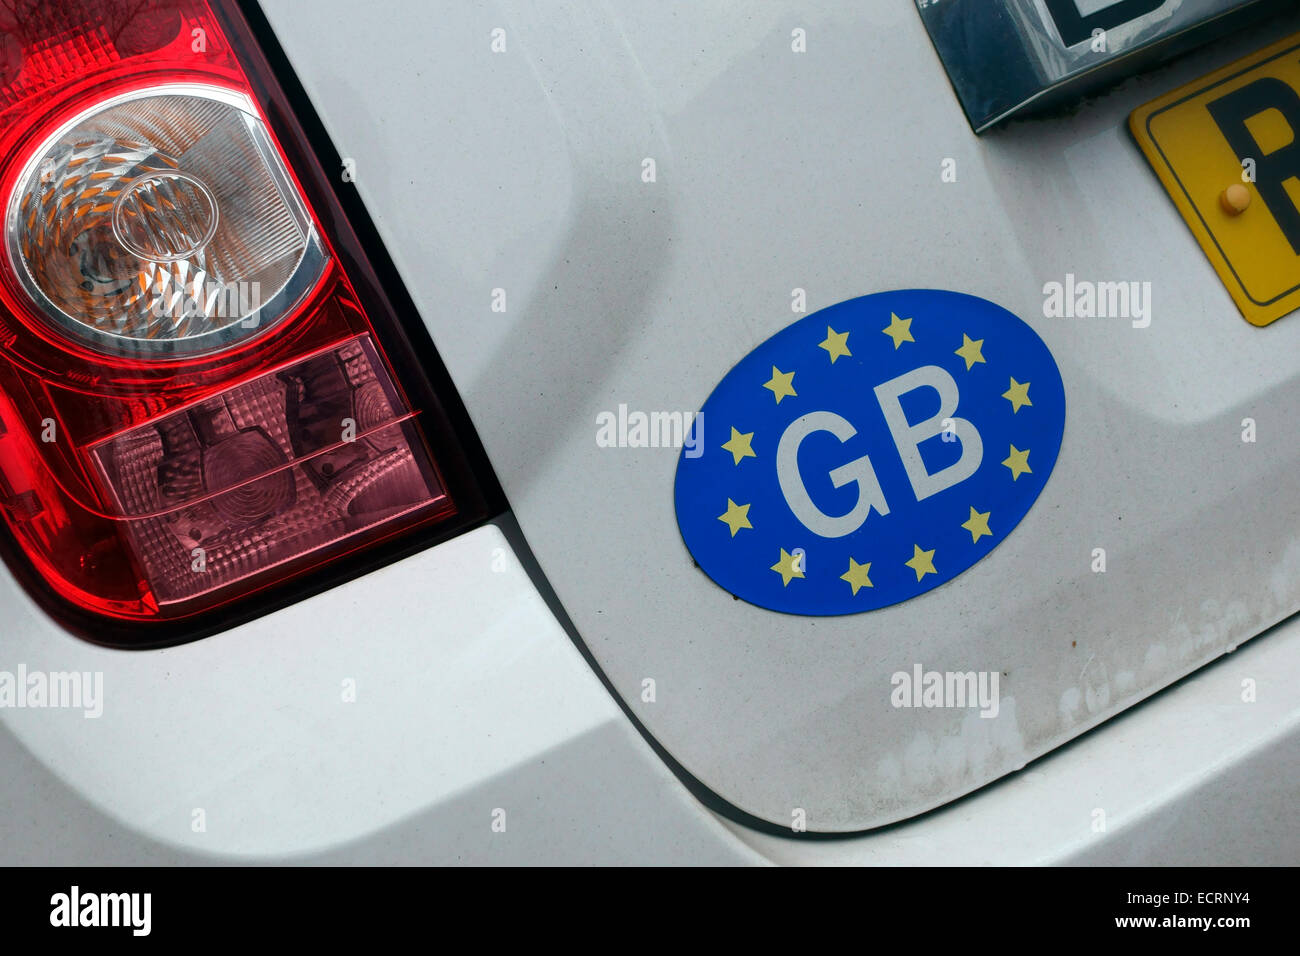 GB-Aufkleber mit europäischen Sternen auf der Rückseite eines Autos Stockfoto